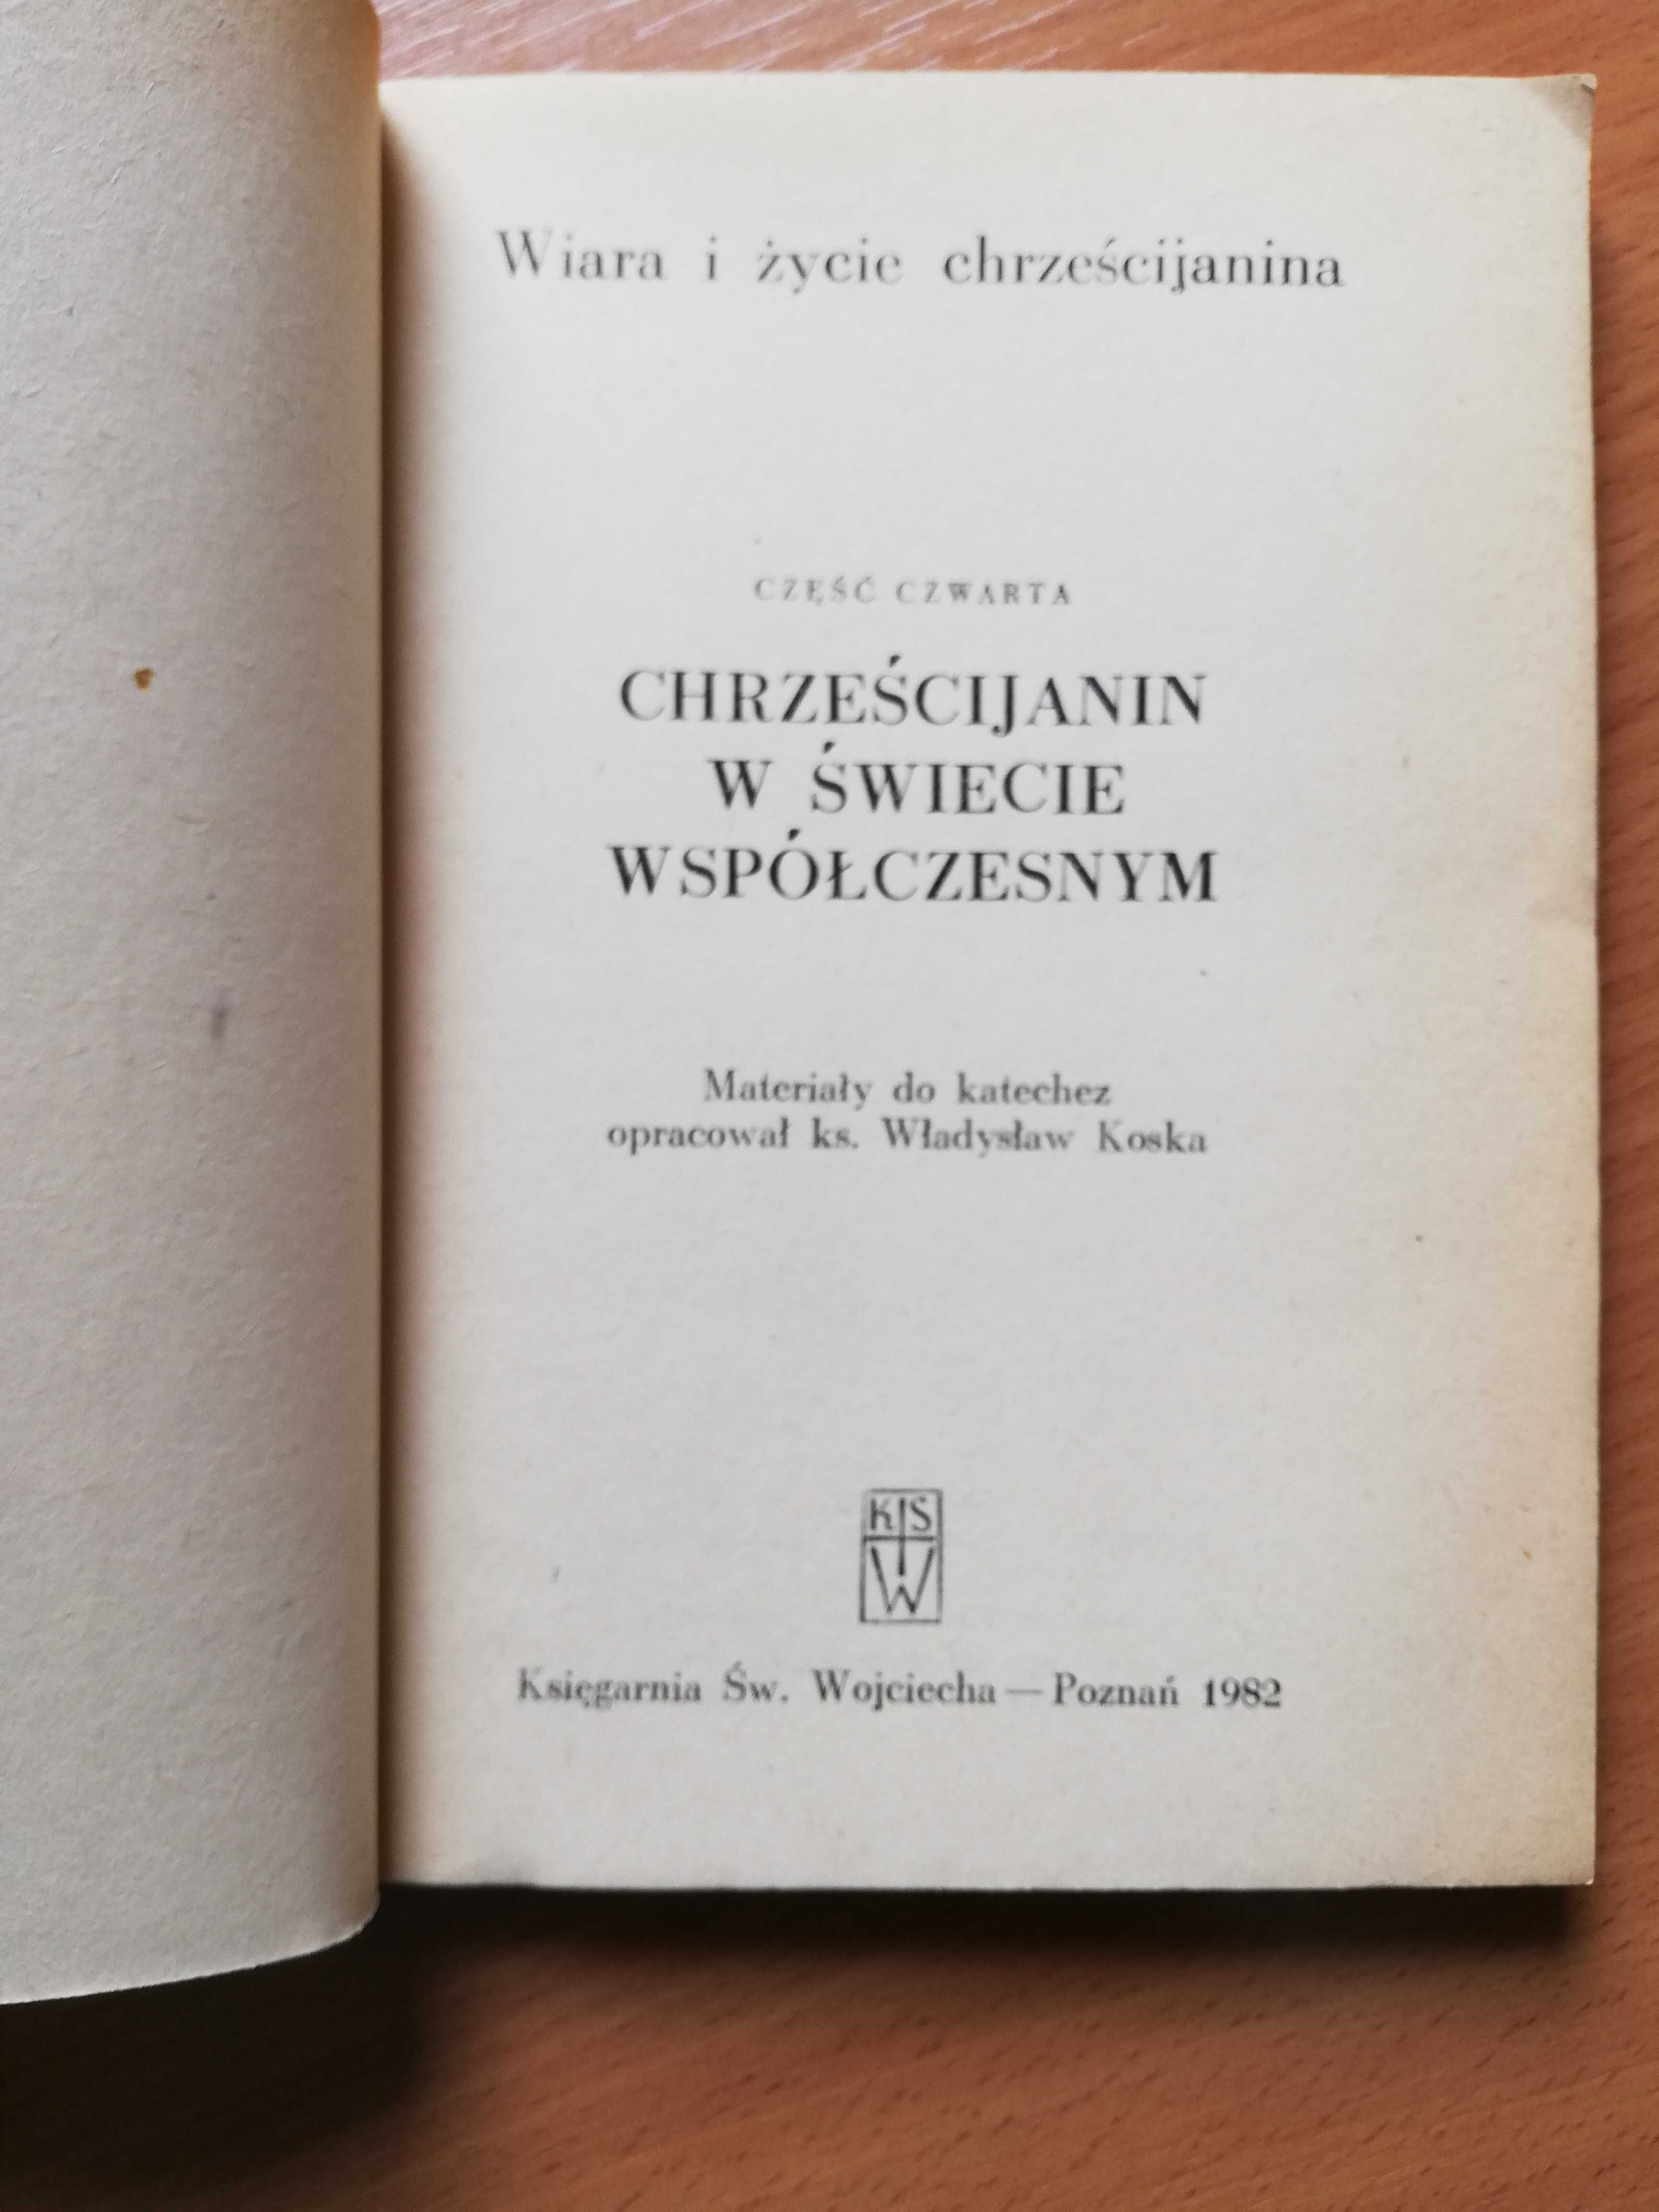 Chrześcijanin w świecie współczesnym Wiara i życie Władysław Koska